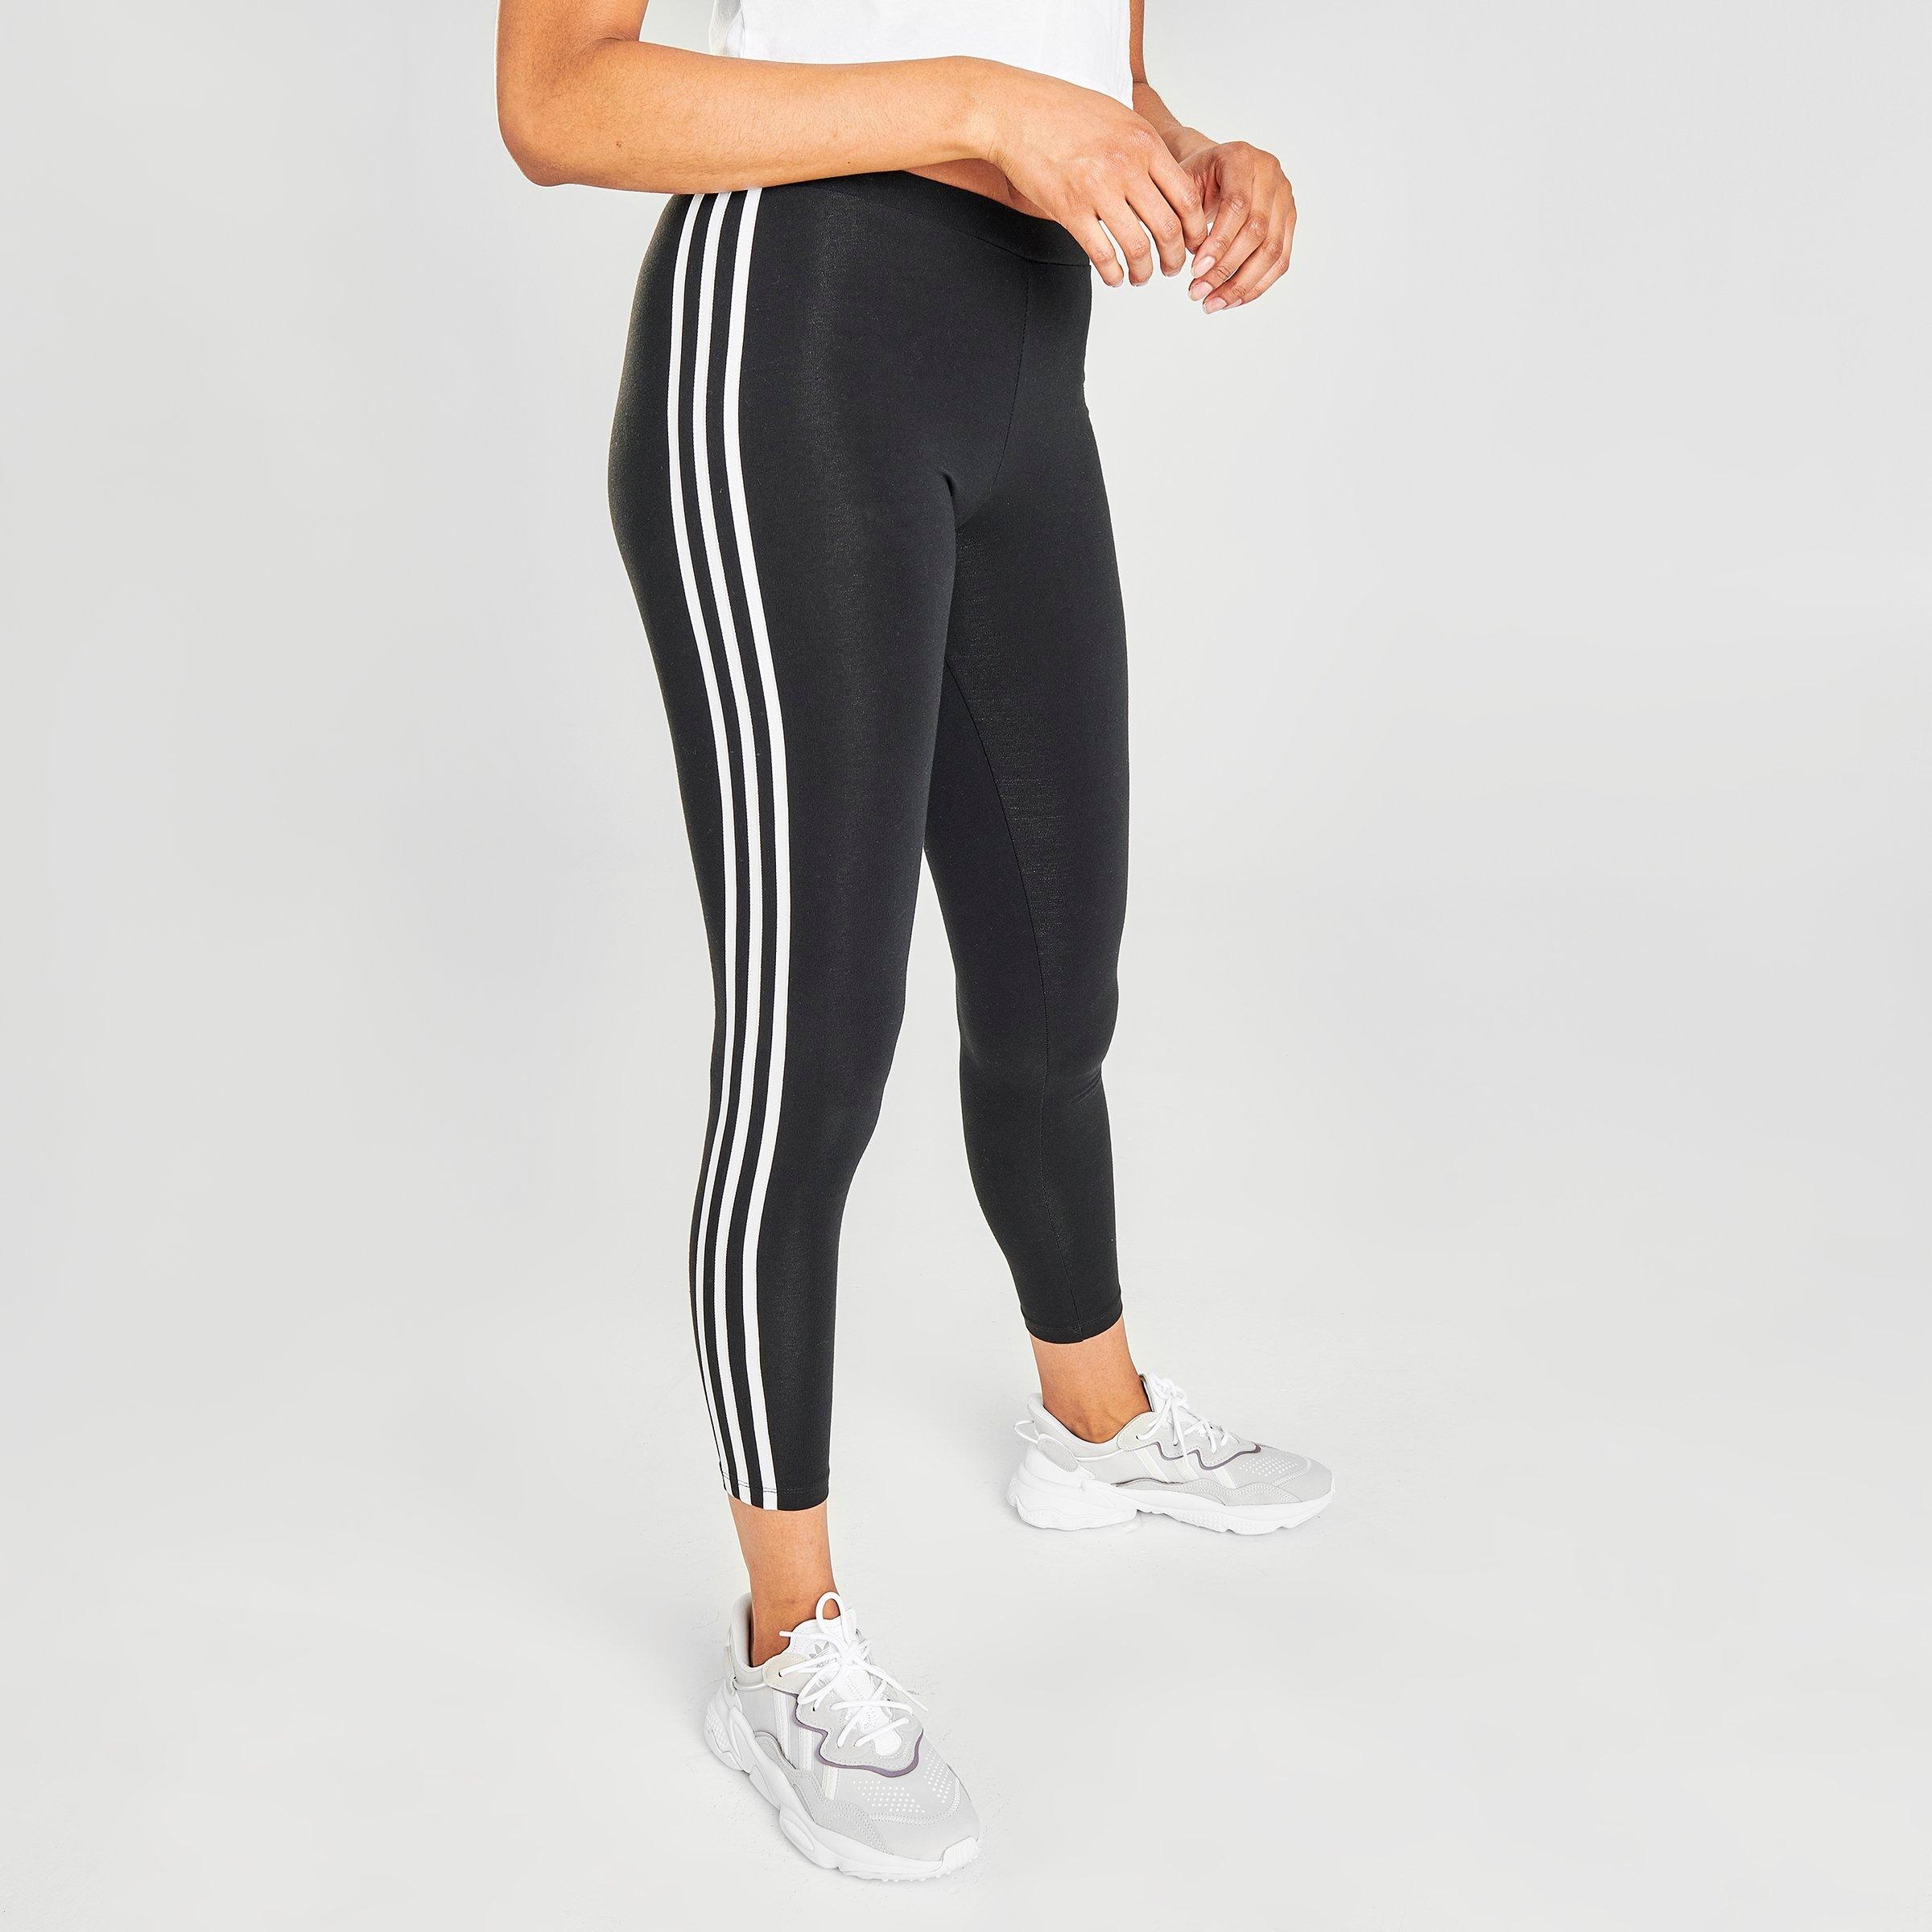 adidas black leggings with white stripes